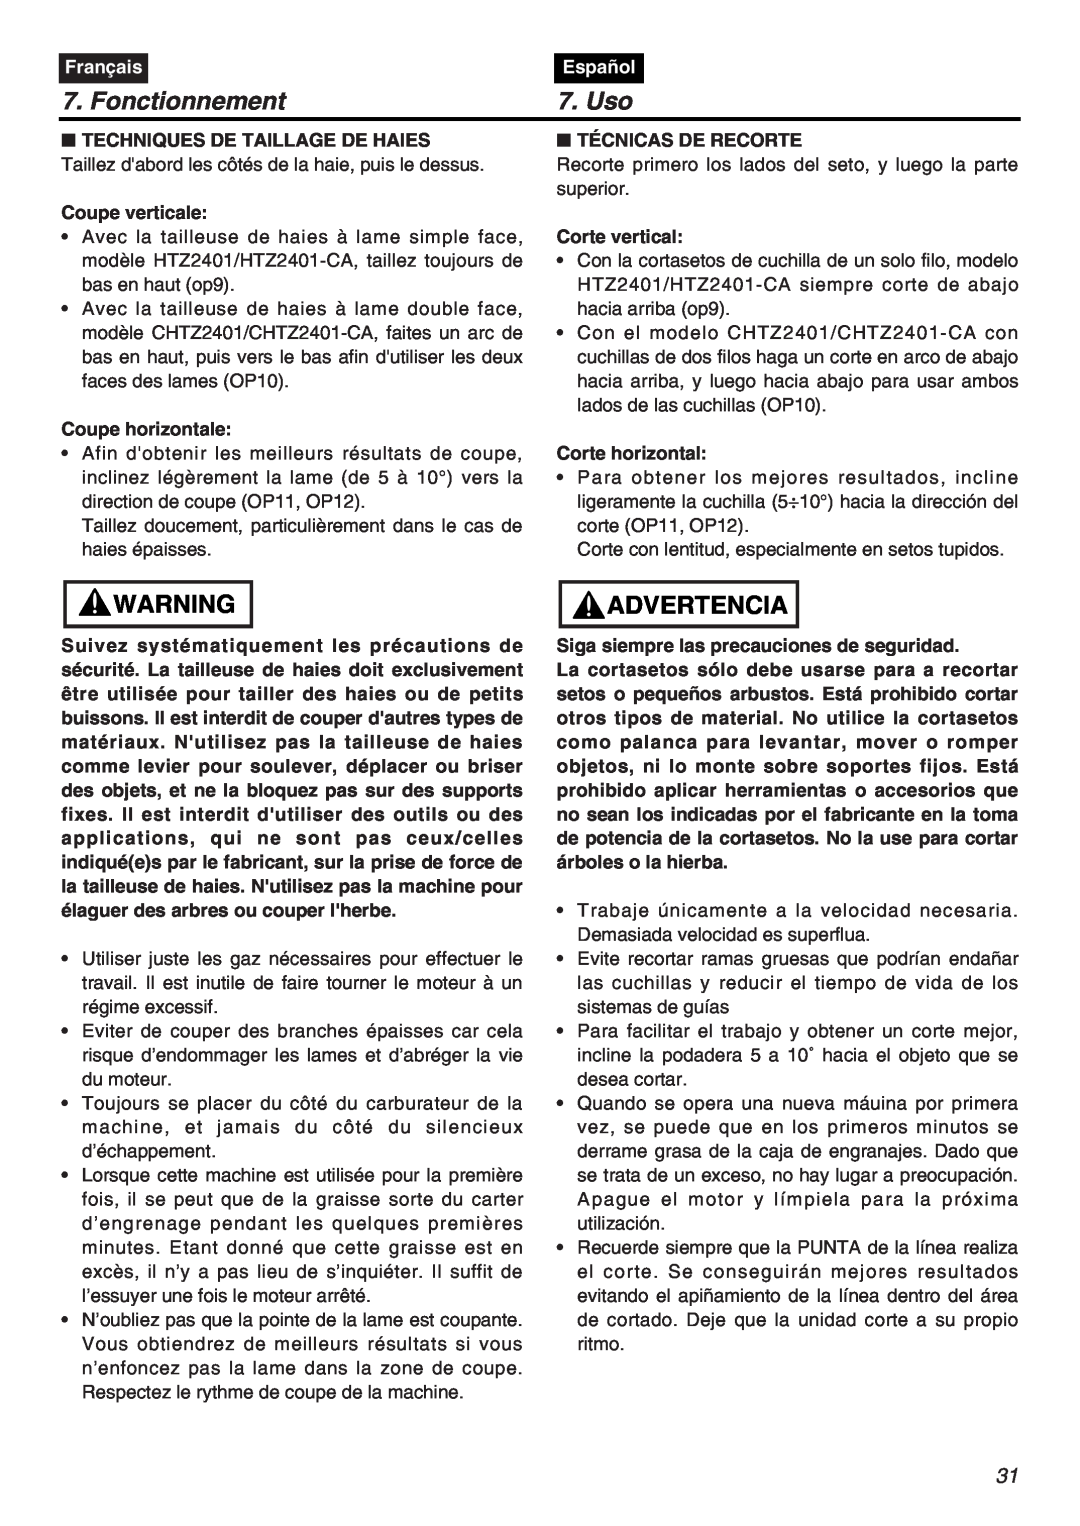 RedMax CHTZ2401L-CA, CHTZ2401-CA manual Fonctionnement, Uso, Advertencia, Français, Español 